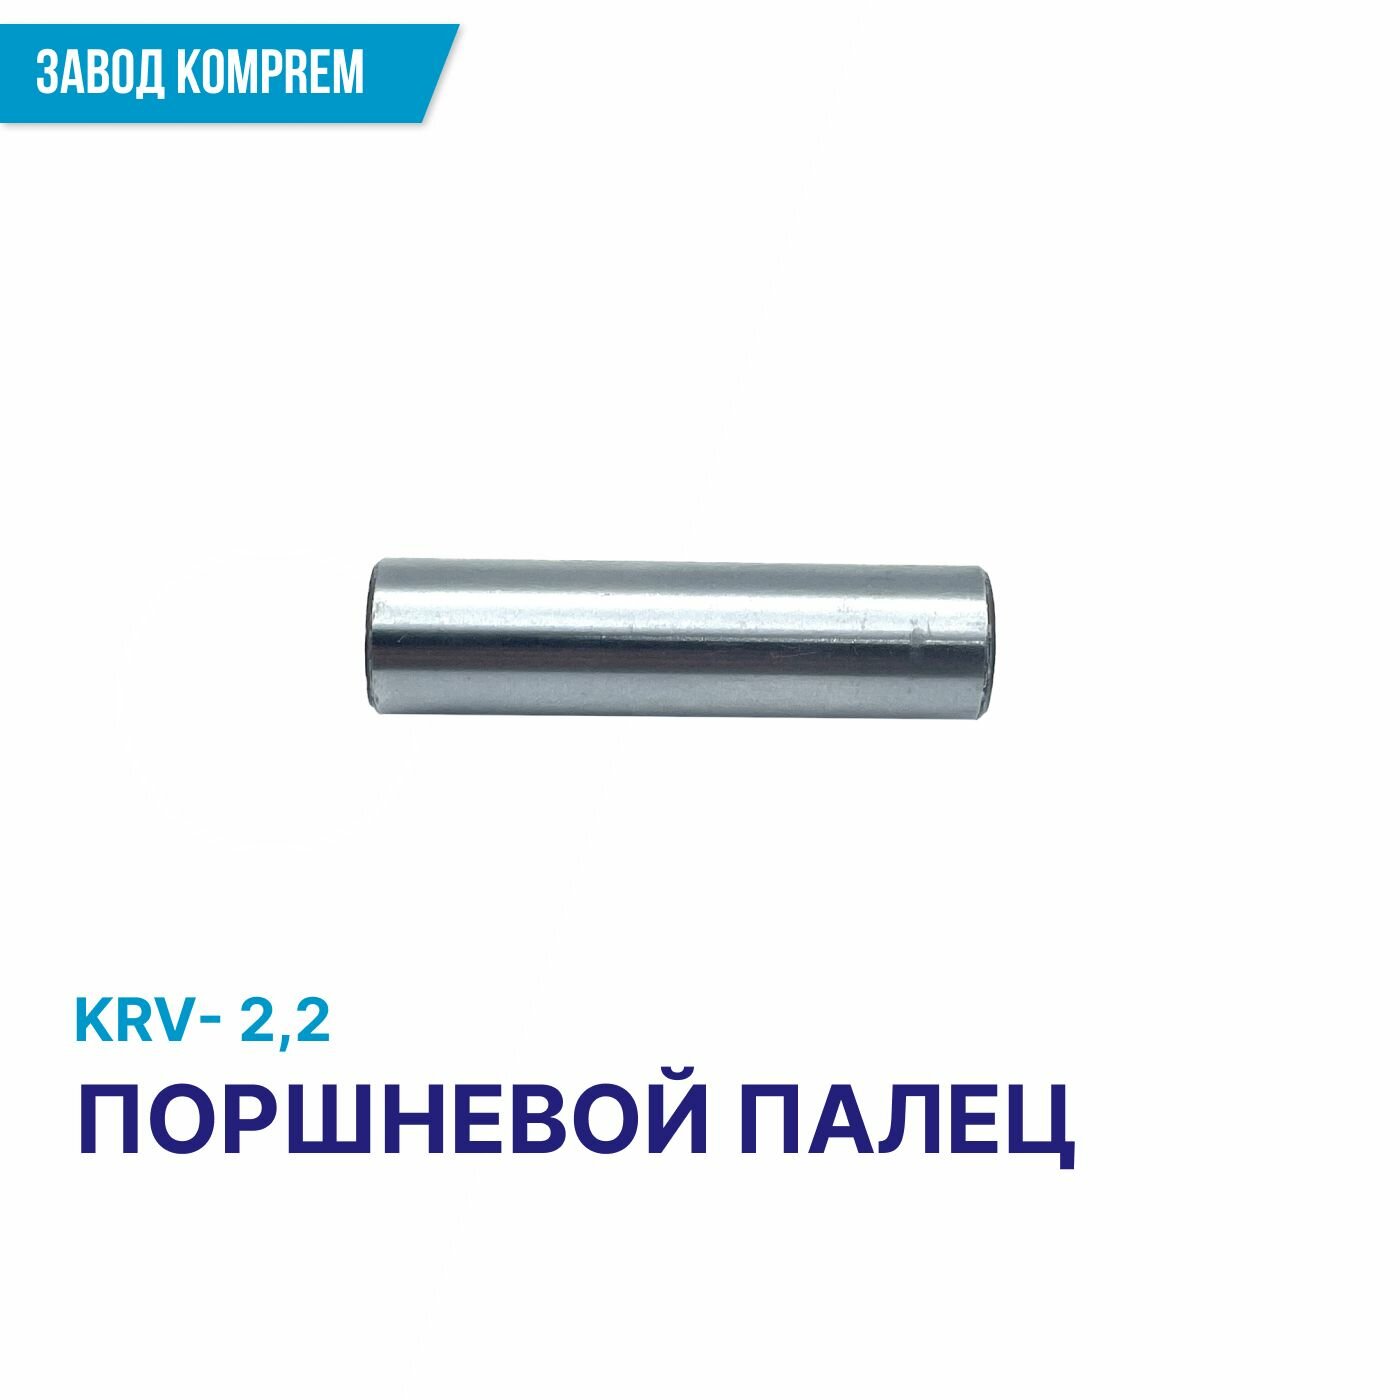 Поршень 65 мм для воздушного компрессора KRV-2.2/KRW-3.0